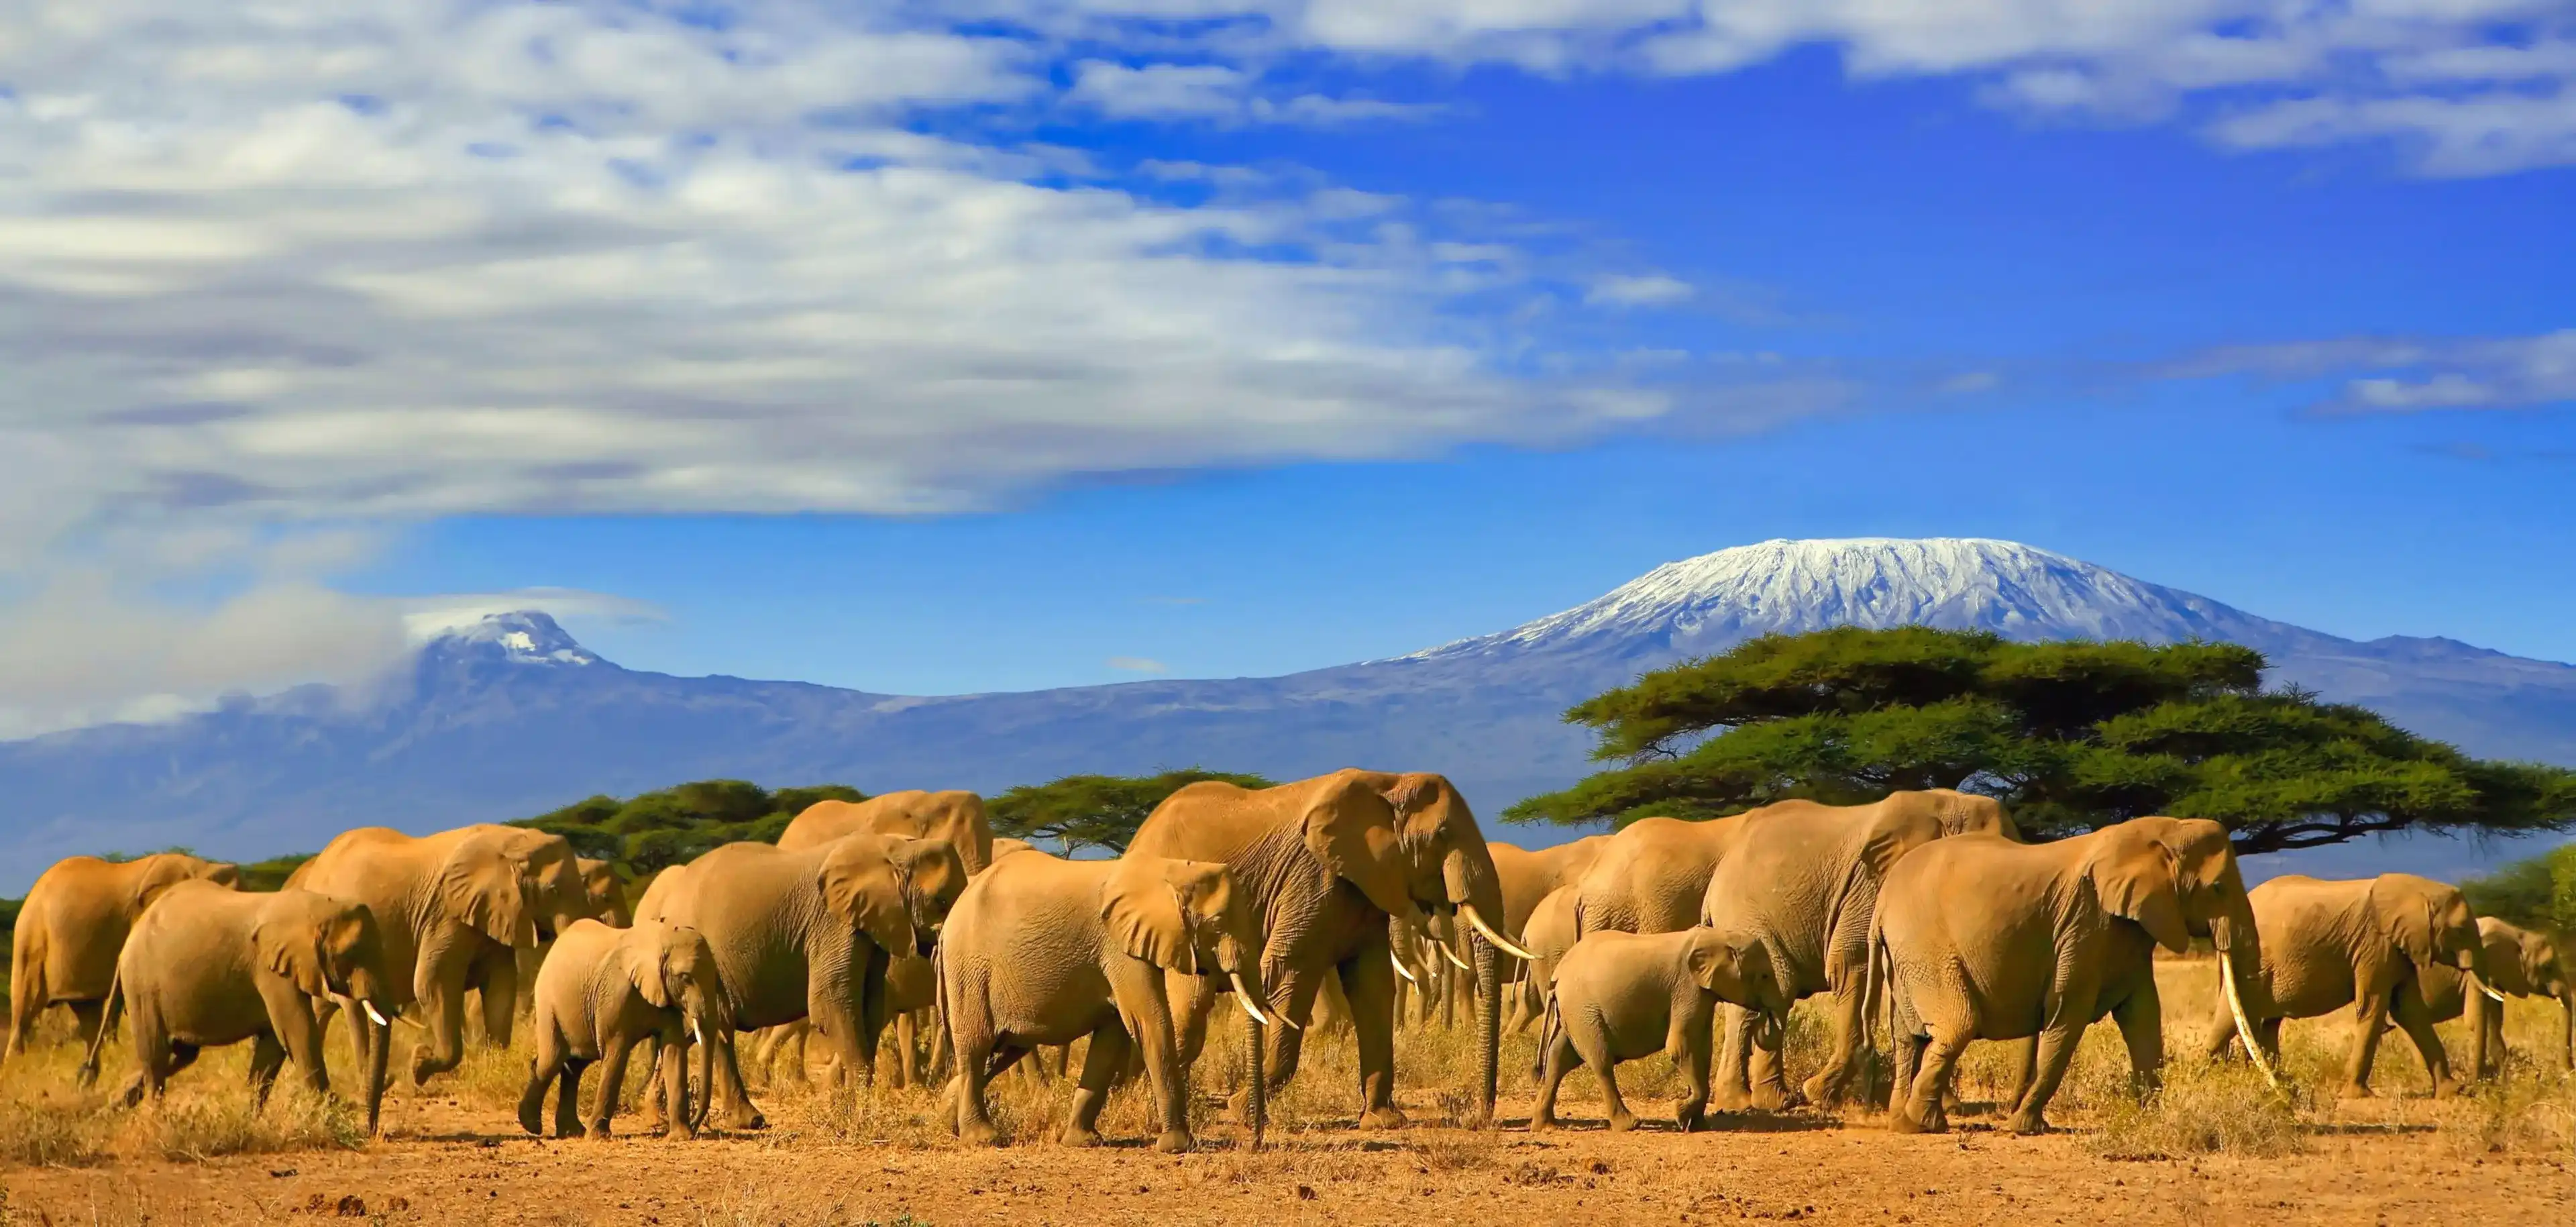 Стадо африканских слонов взяли на сафари поездку в Кению с снежной горы Килиманджаро в Танзании на заднем плане, под облачным голубым небом.